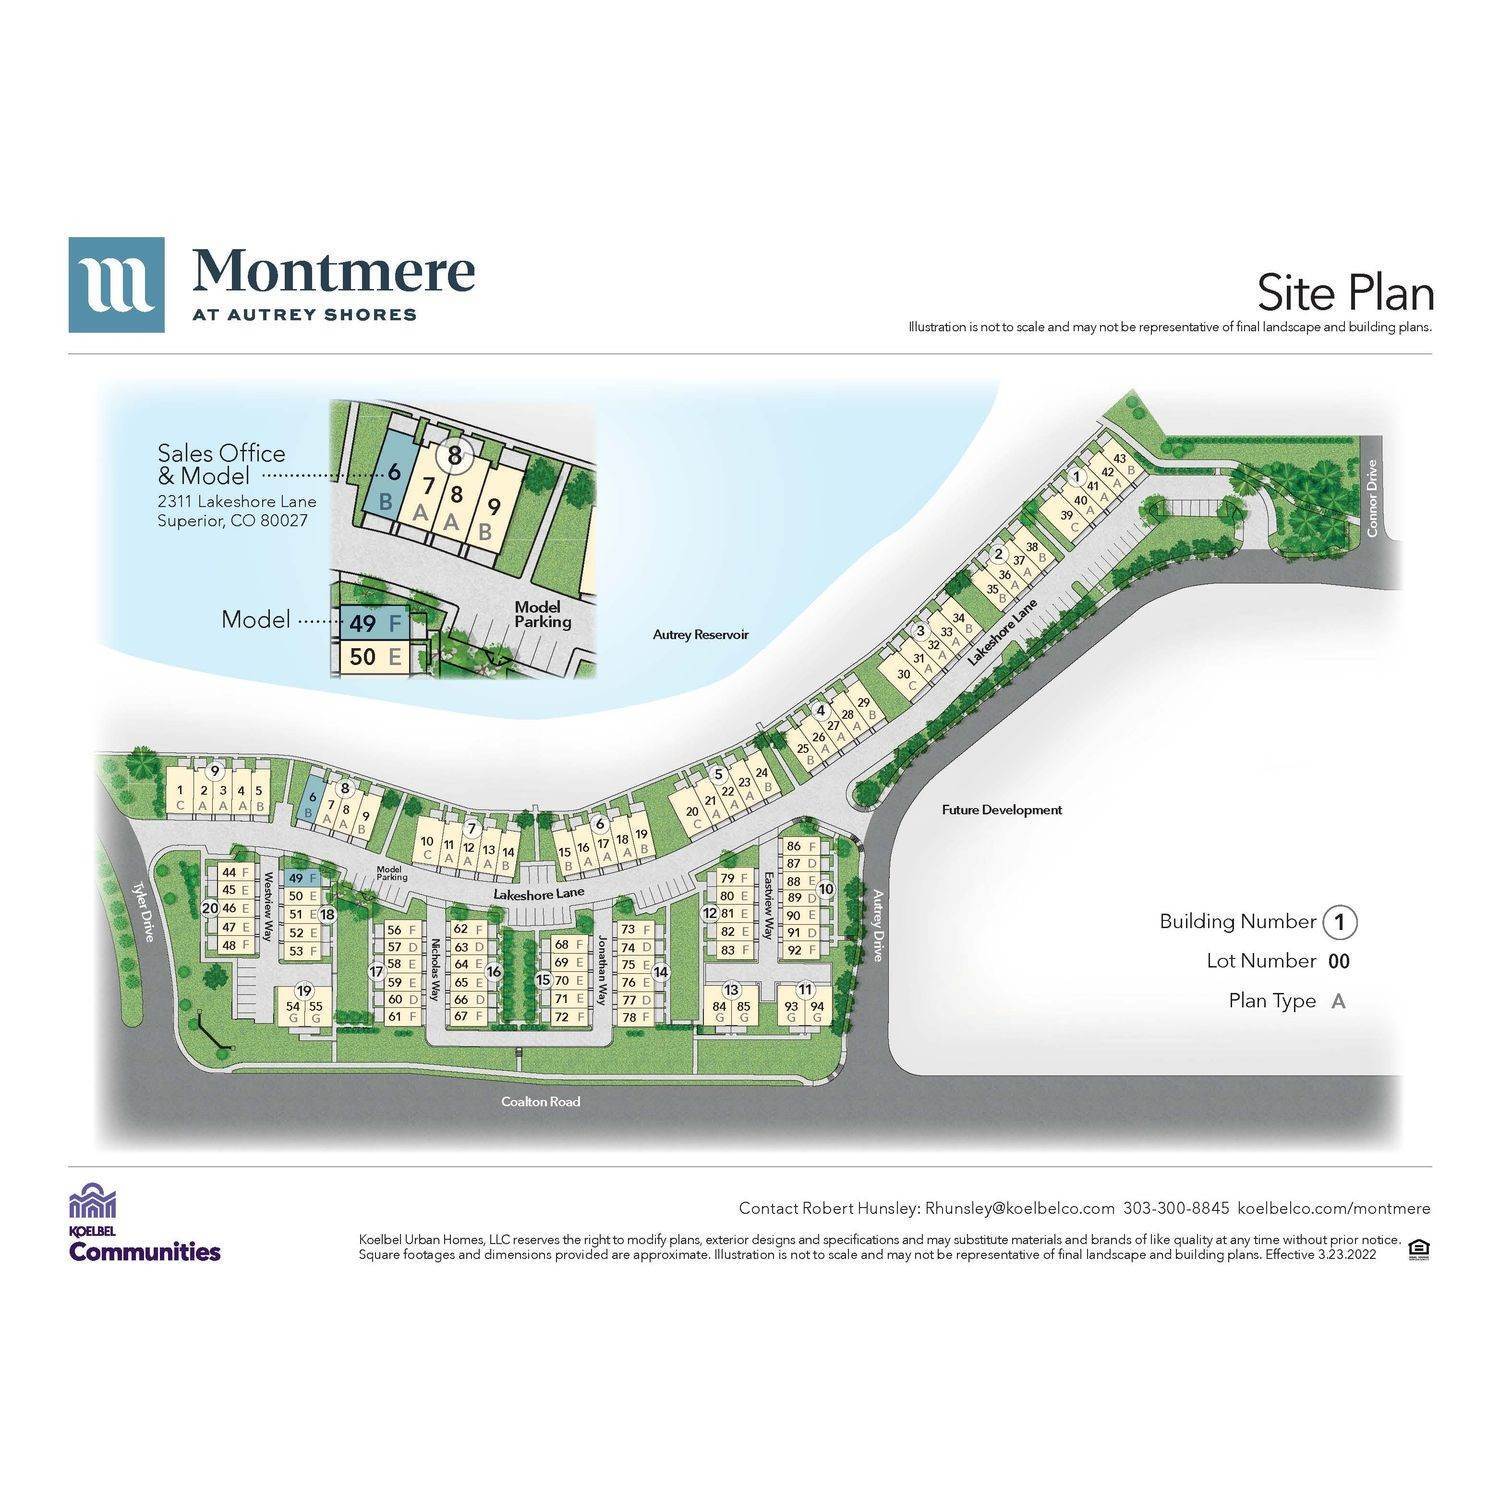 Montmere at Autrey Shores建于 2311 Lakeshore Lane, Superior, CO 80027